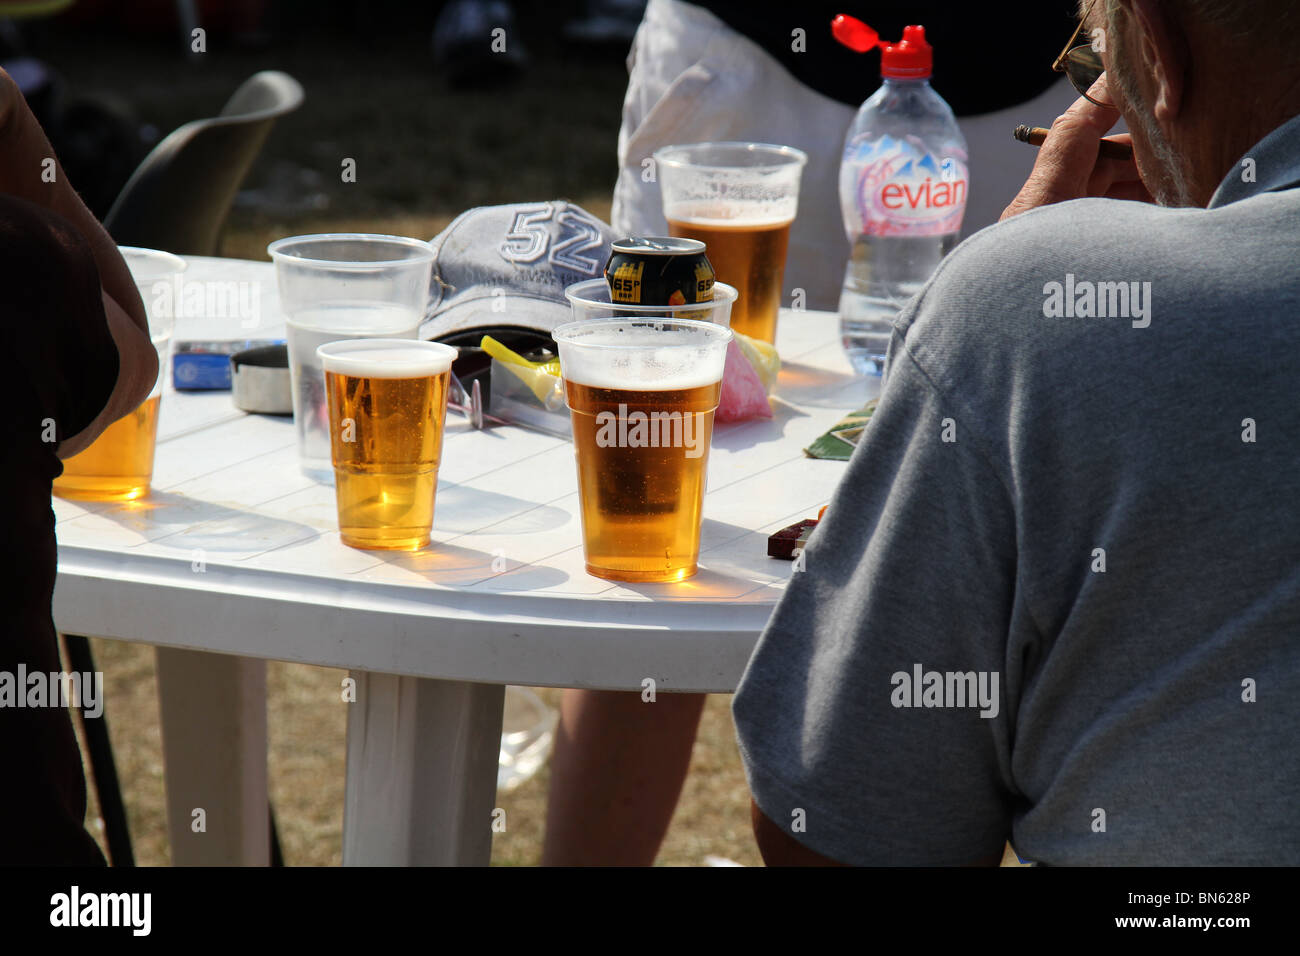 La birra e le bevande in bicchieri di plastica per la salute e per ragioni di sicurezza. Foto Stock